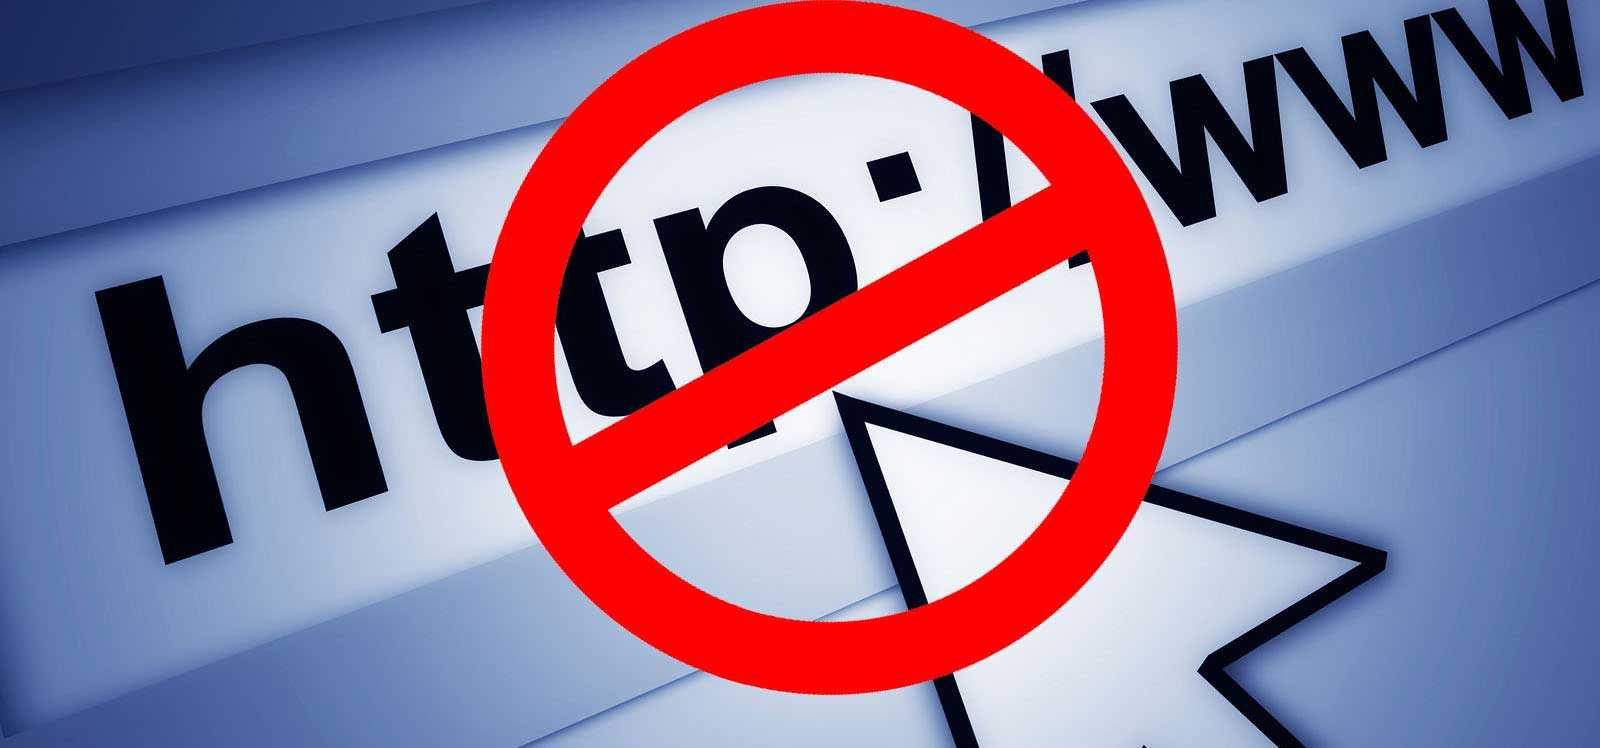 سبب عدم حظر المواقع الإباحية بالأردن Image